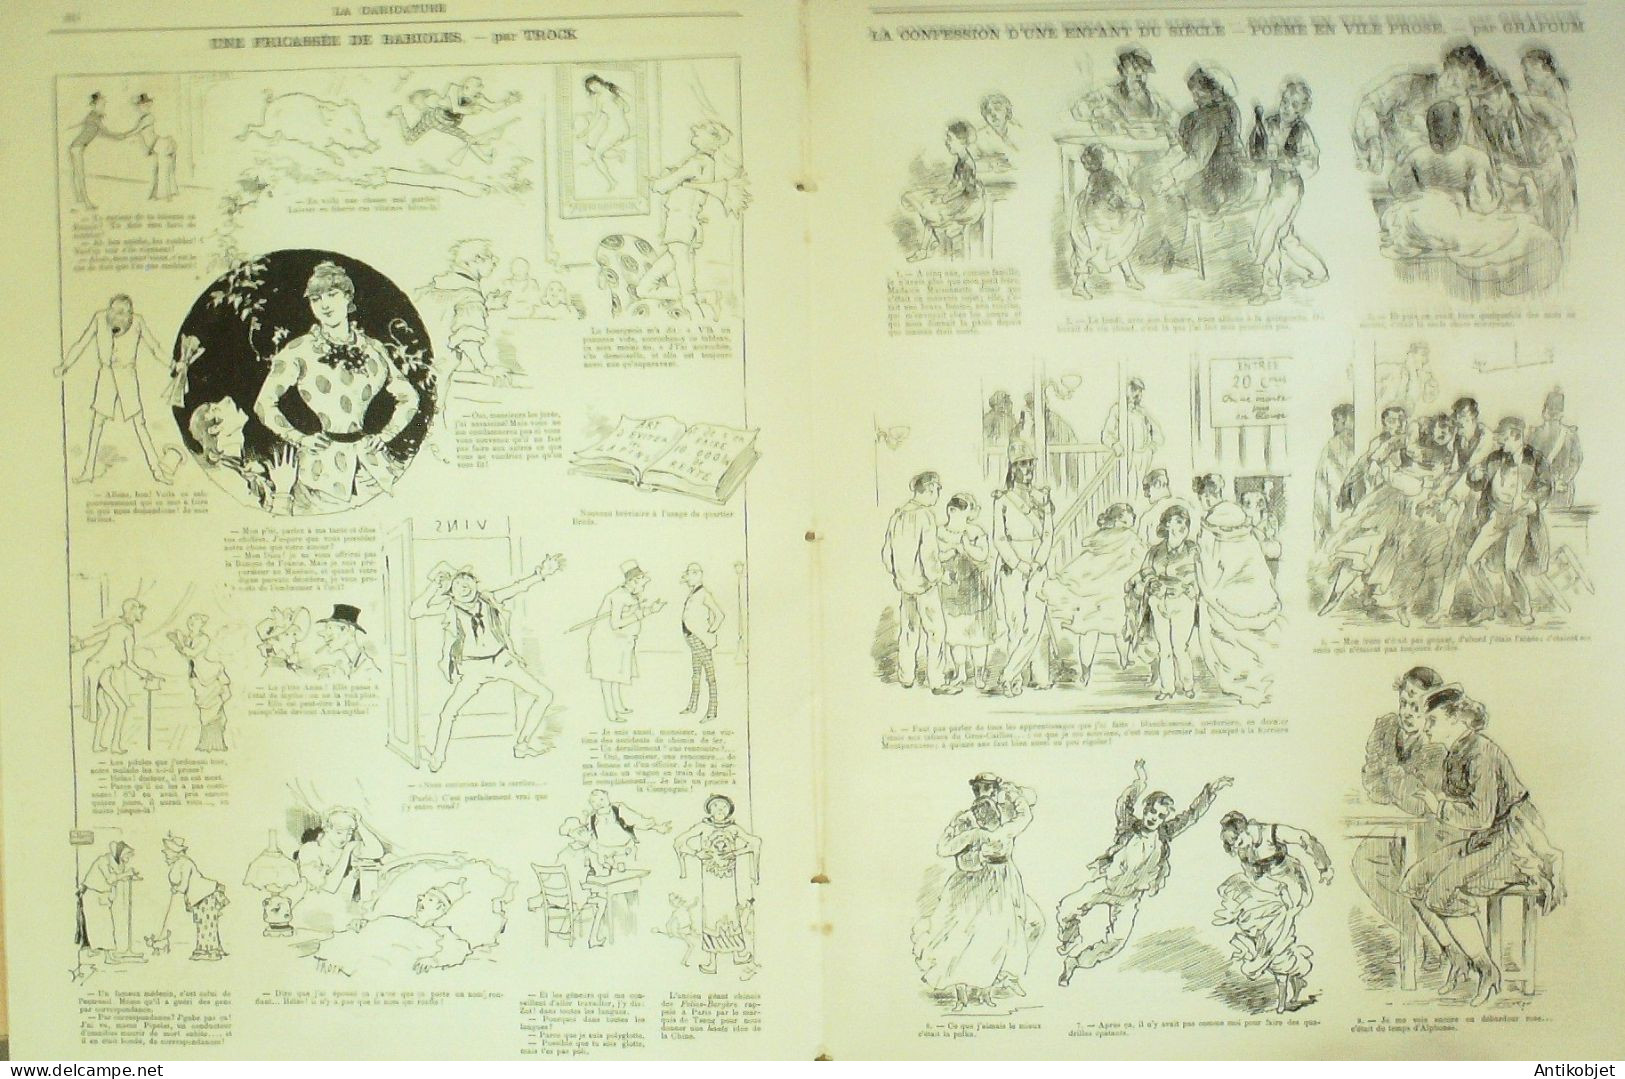 La Caricature 1883 N°198 Colonet Ramollot à Table D'hôte The Turf Sorel Ville Rose Grafoum Trock - Zeitschriften - Vor 1900